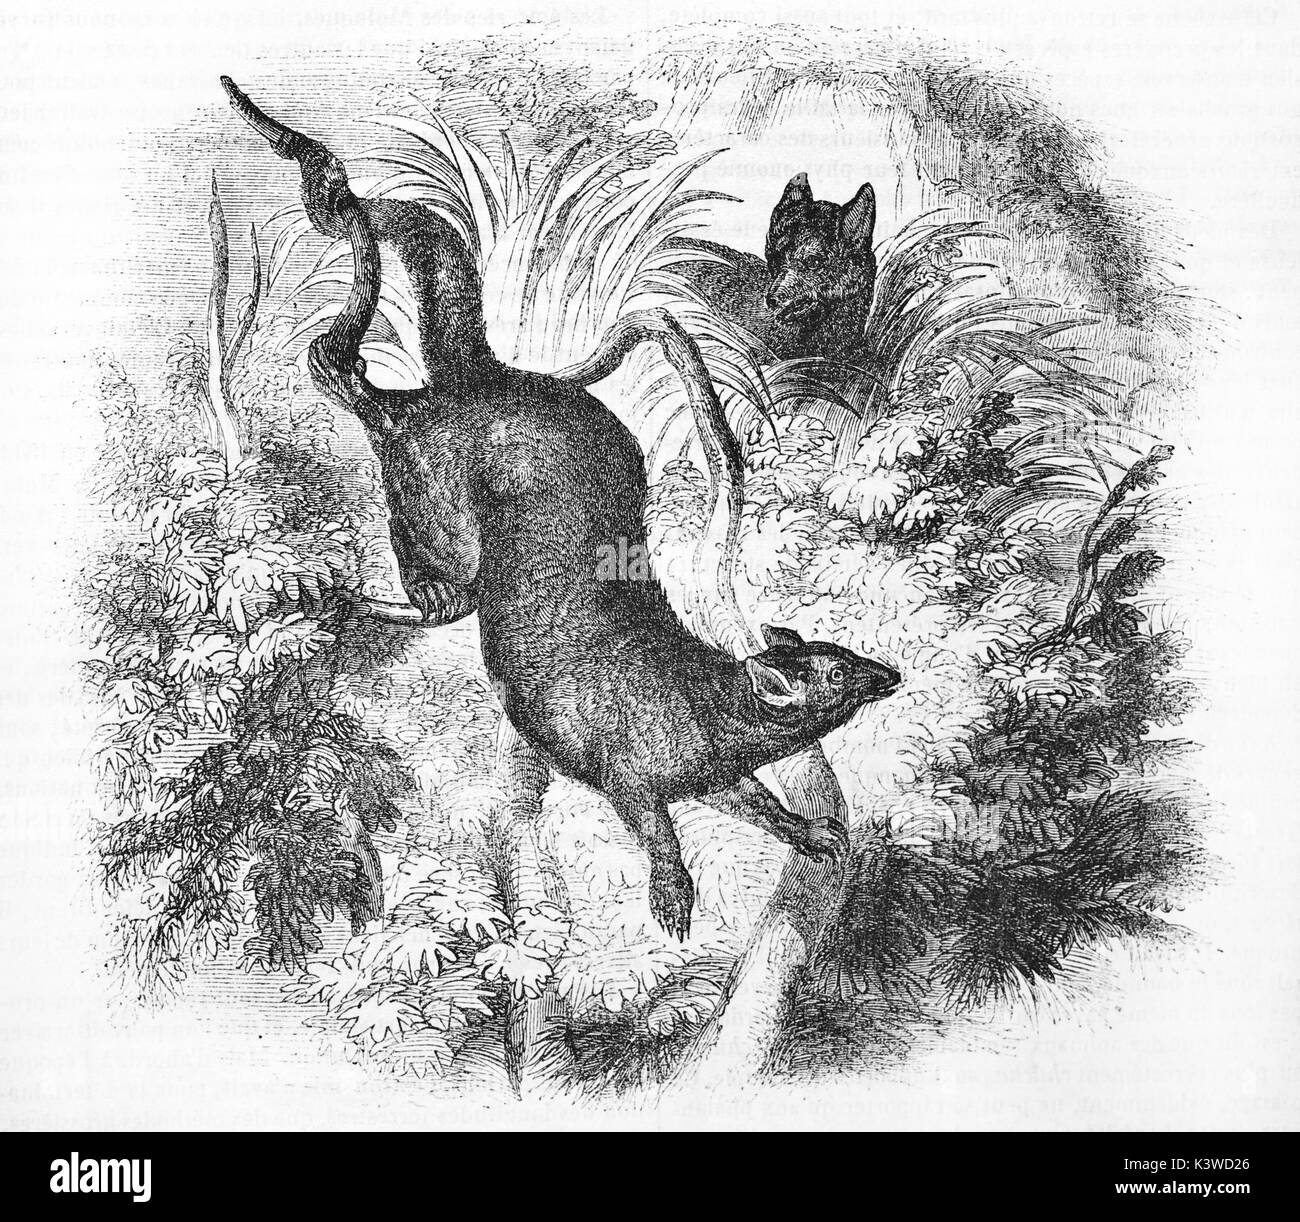 Vecchia illustrazione di Phalanger fuligineux, marsupiali della famiglia Phalangeridae. Da autore non identificato, pubblicato il Magasin pittoresco, Parigi, 1841 Foto Stock